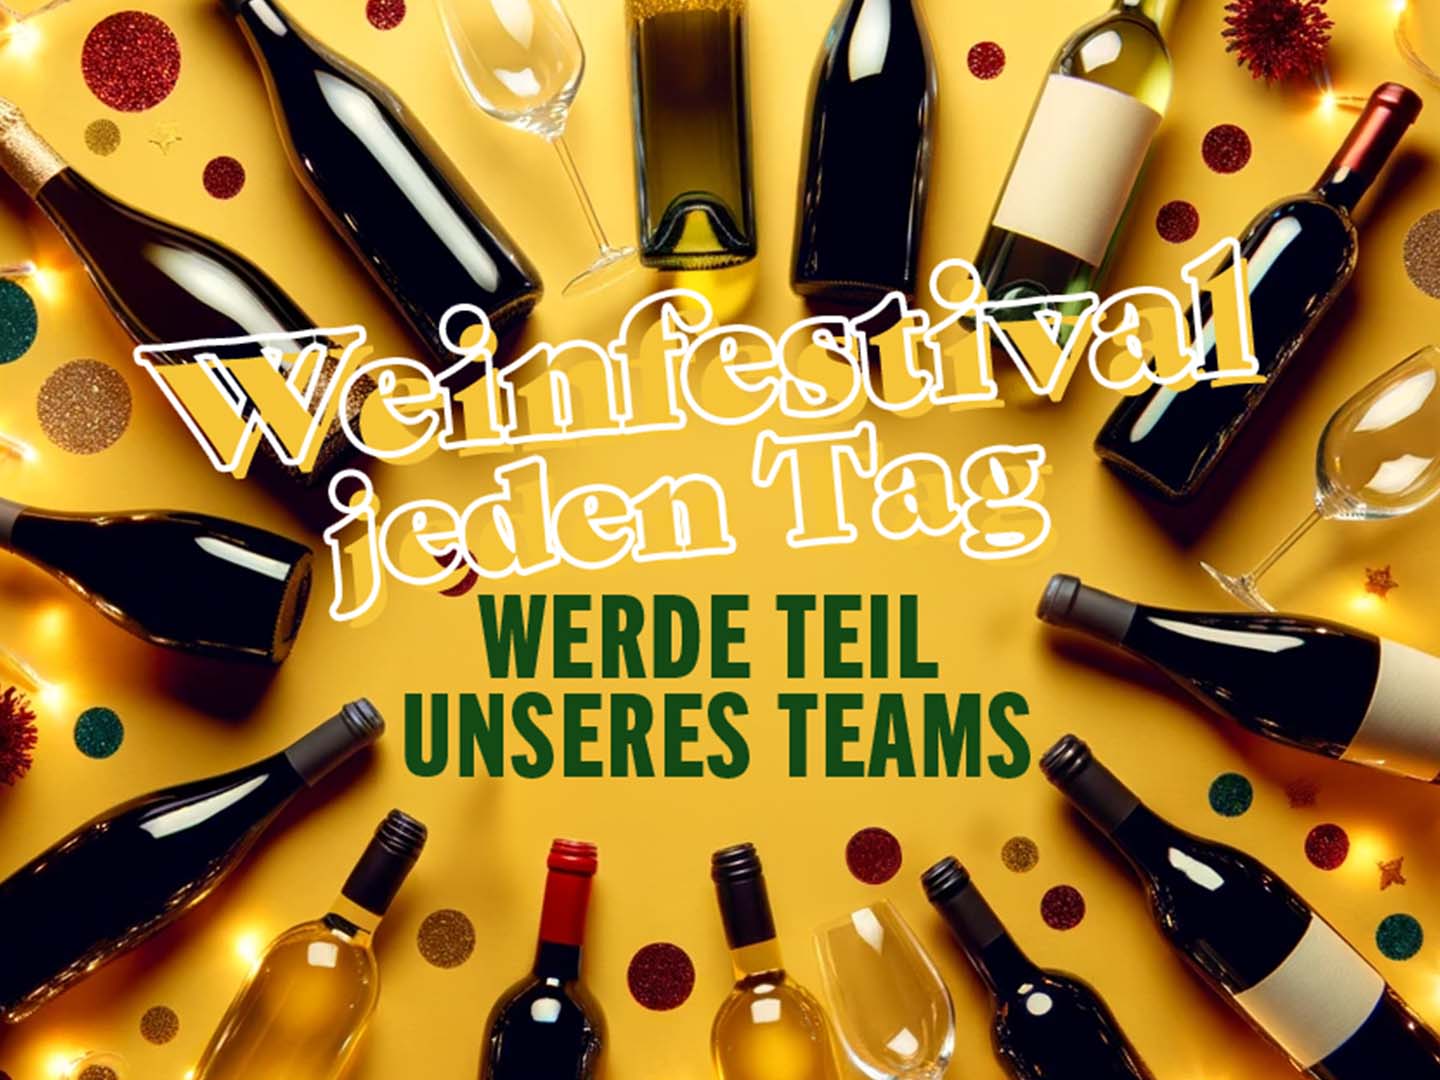 Weinfestival jeden tag: Werde Teil unseres Teams!